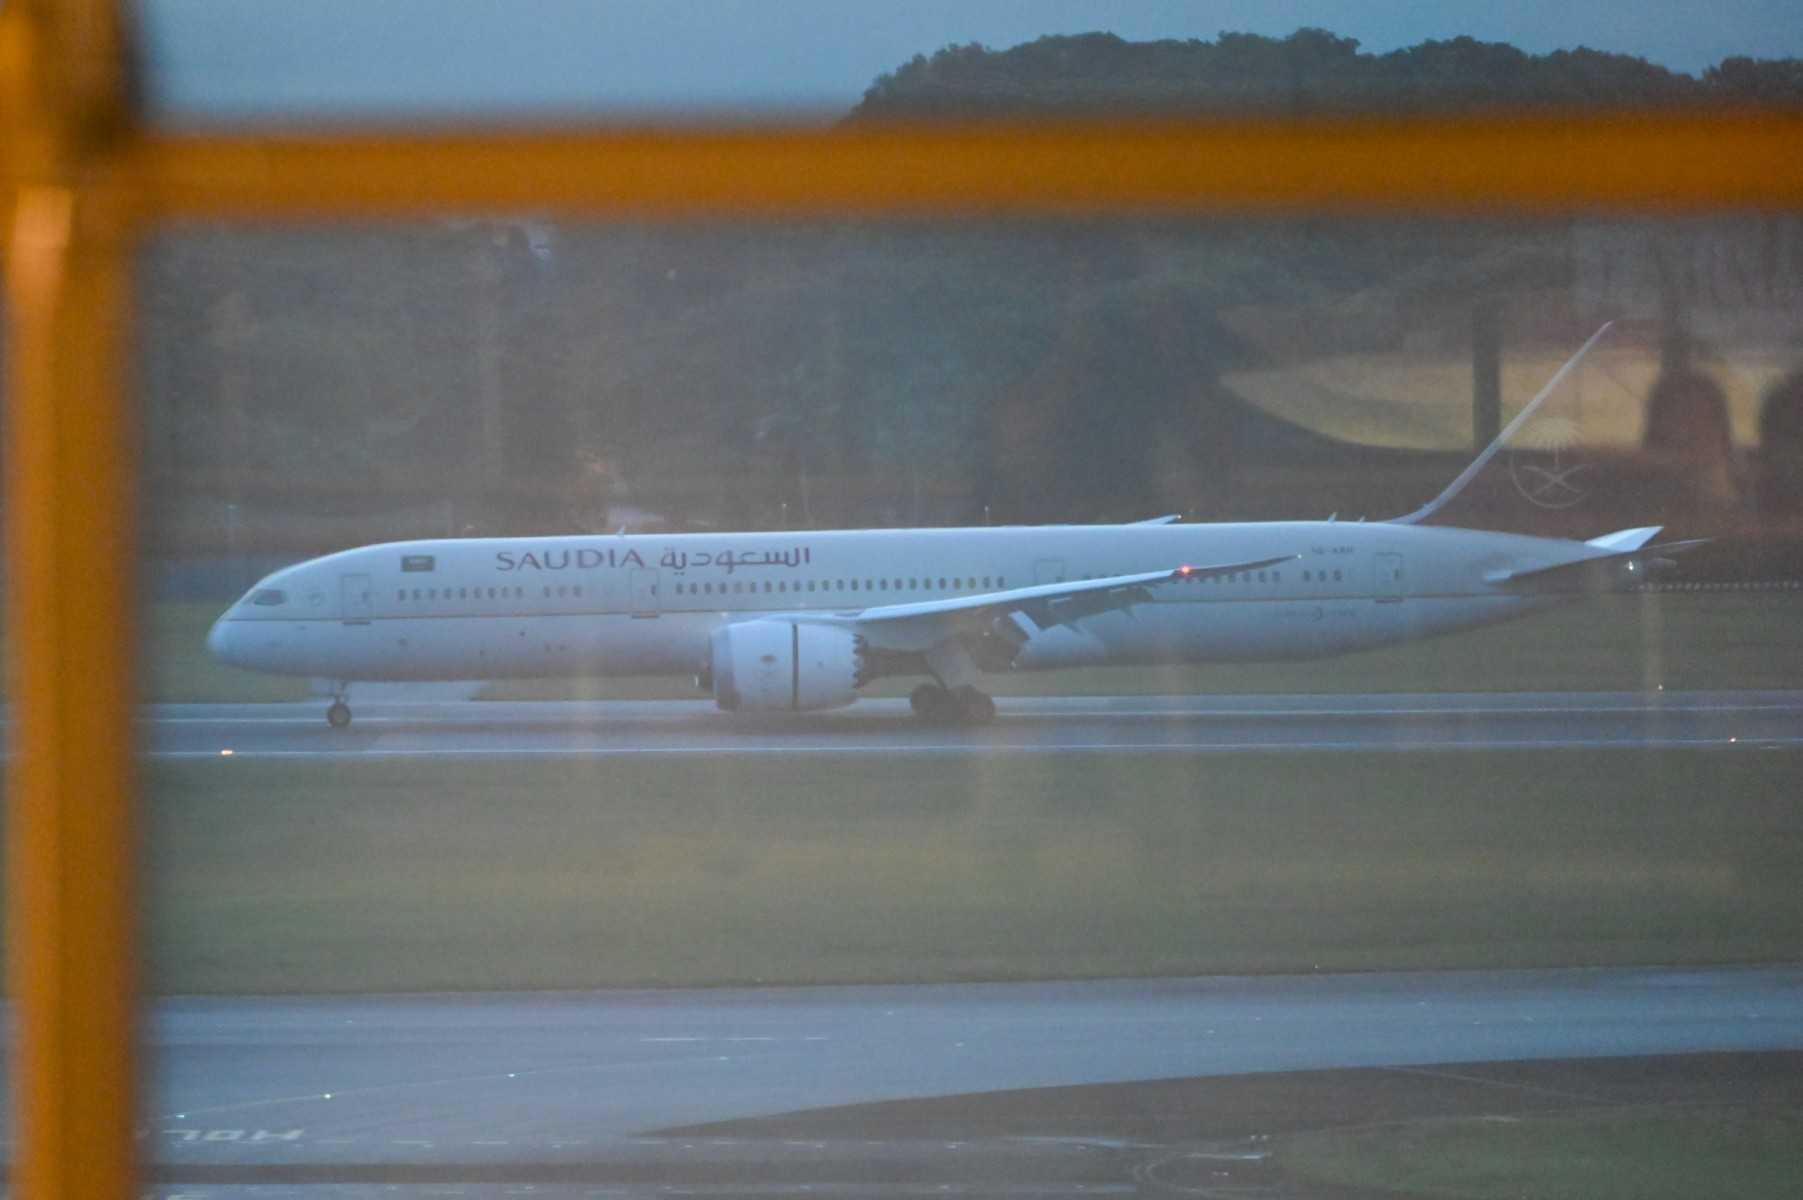 Pesawat Boeing 787 Saudia Airline yang dipercayai membawa presiden Sri Lanka dilihat mendarat di Lapangan Terbang Changi, SIngapura. Gambar: AFP